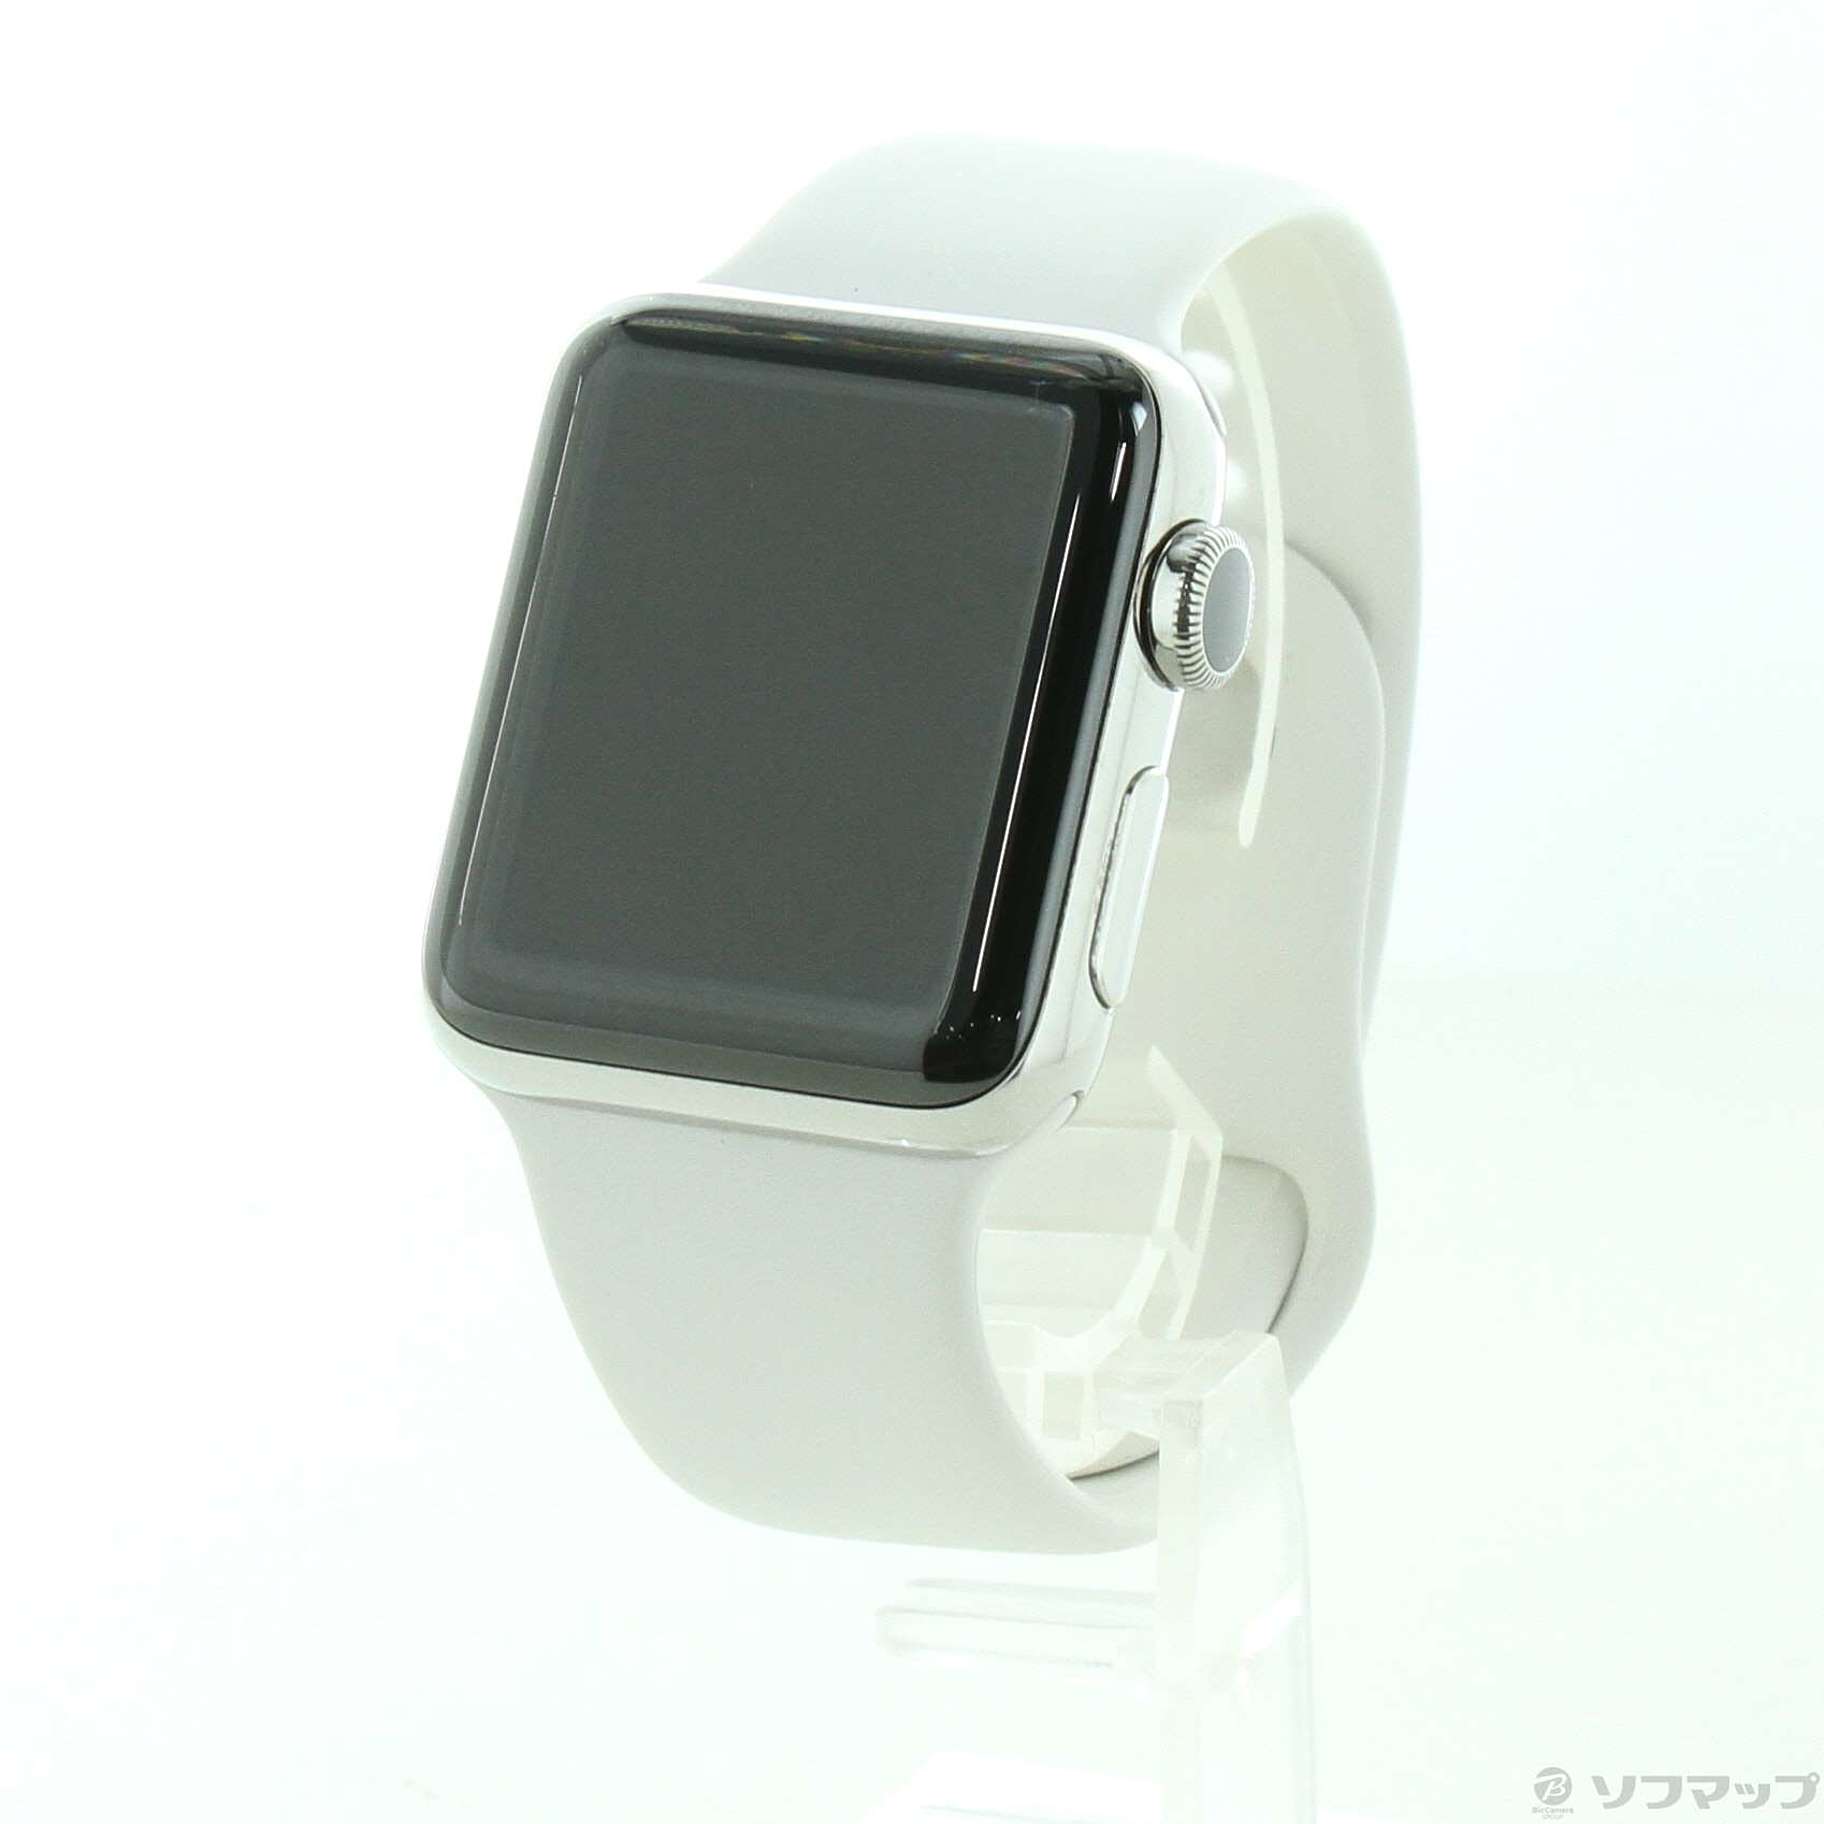 Apple Watch Series 2 38mmステンレススチールケースカラーホワイト